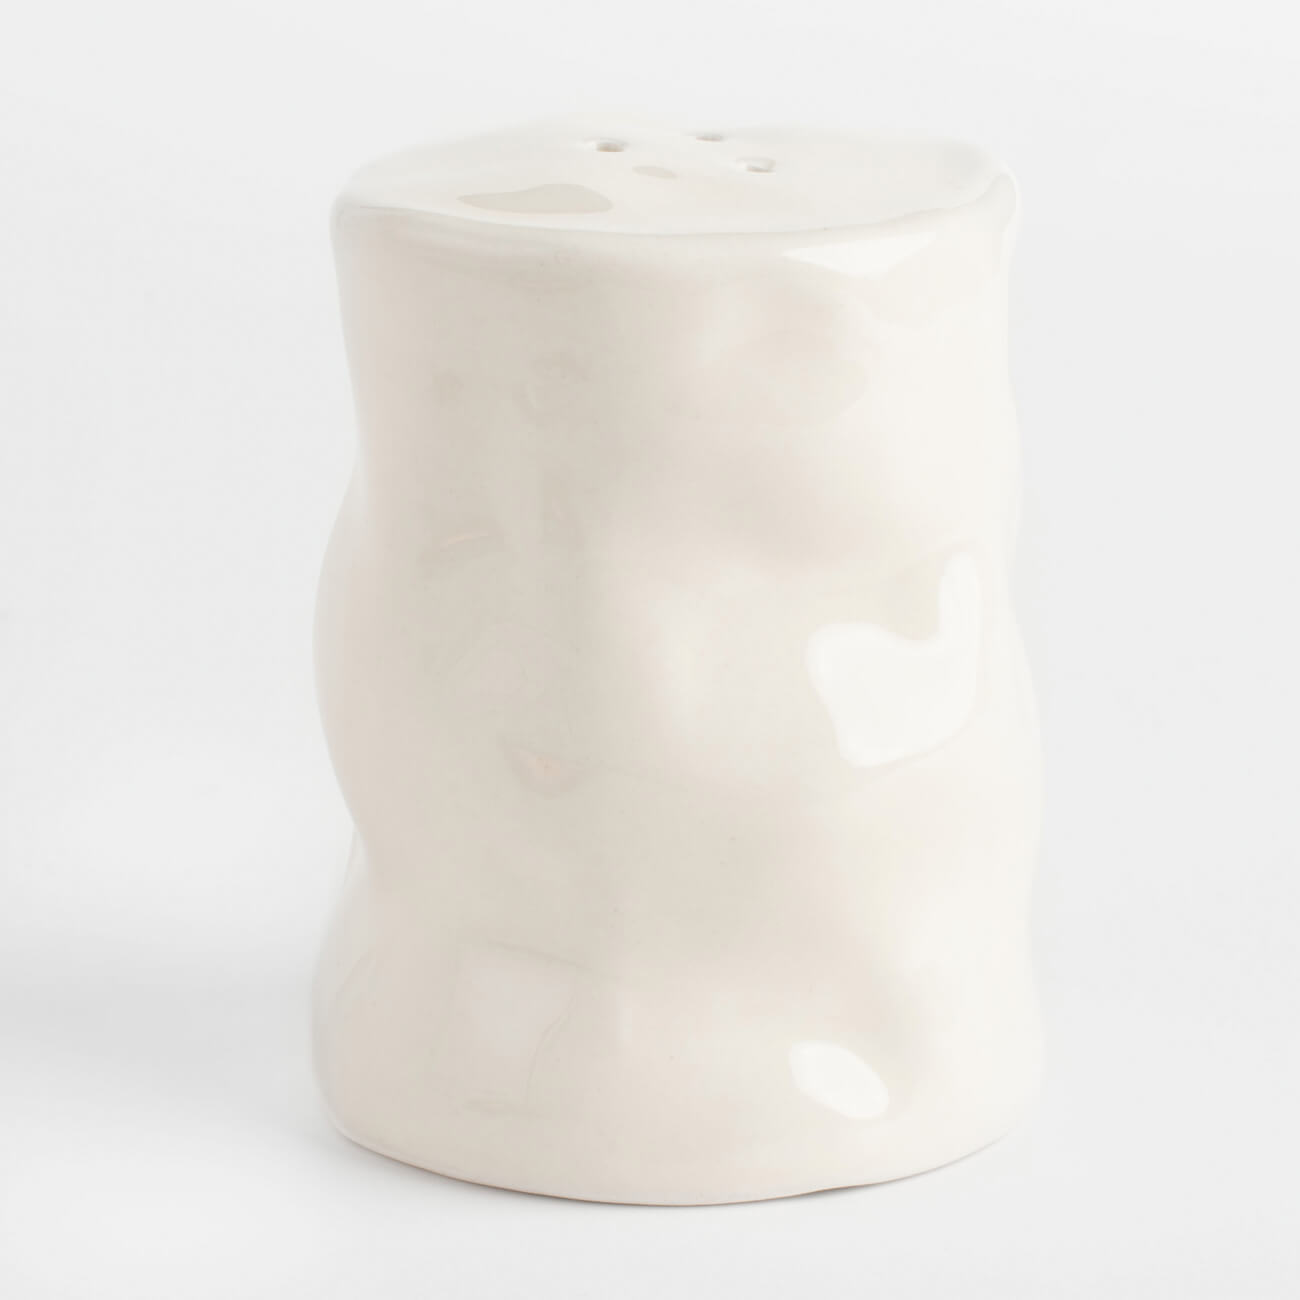 Емкость для соли или перца, 7 см, керамика, молочная, Мятый эффект, Crumple